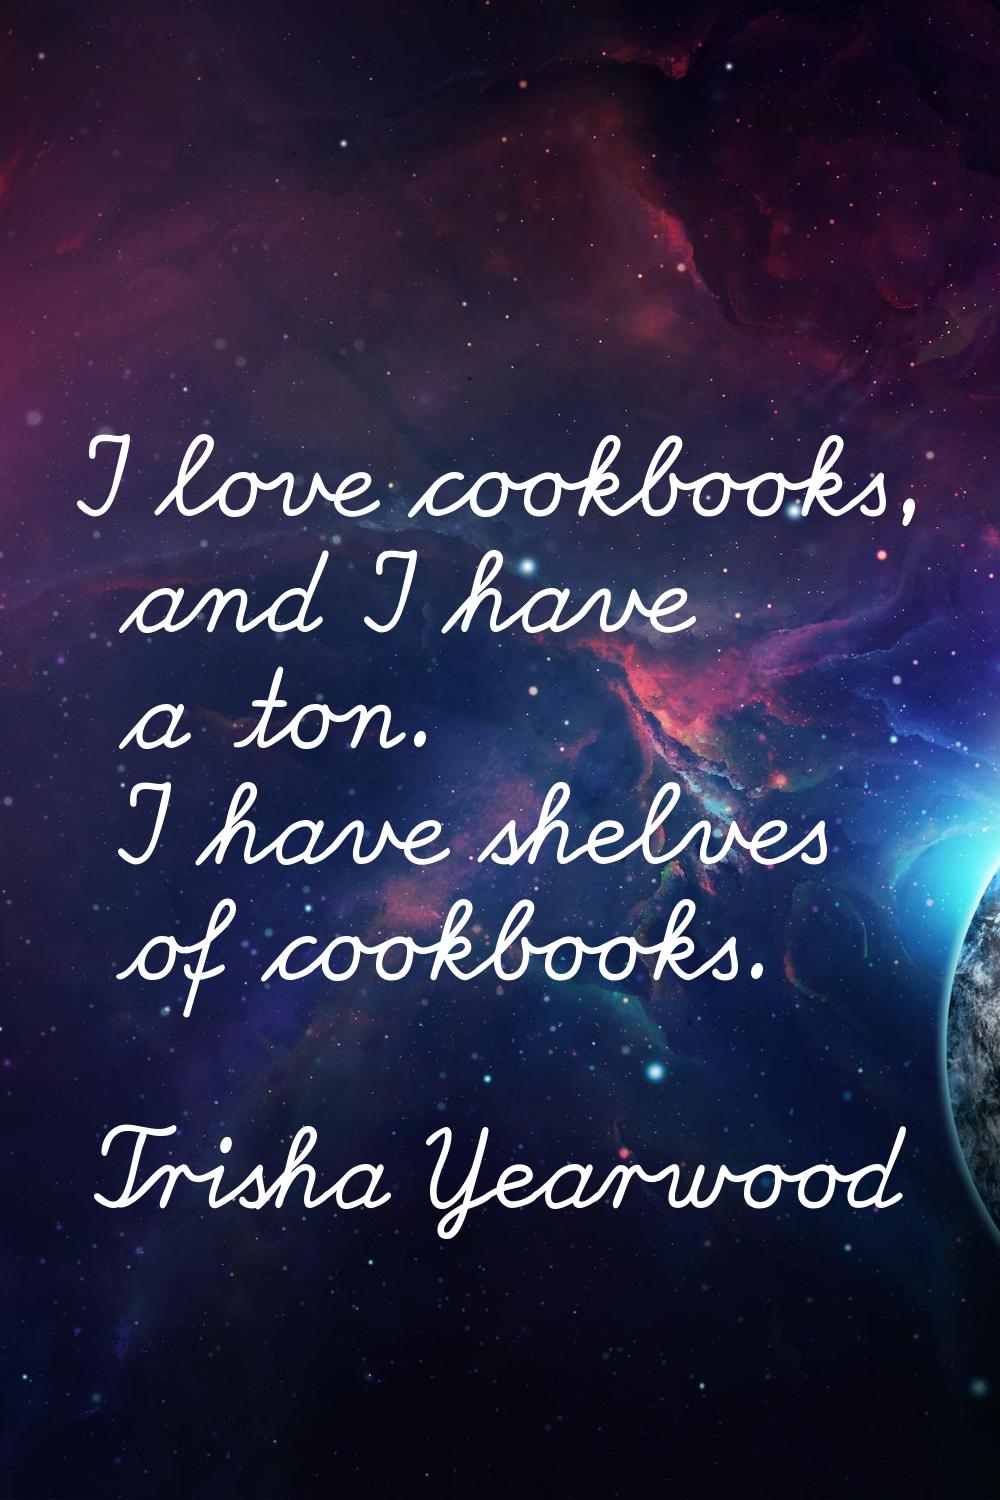 I love cookbooks, and I have a ton. I have shelves of cookbooks.